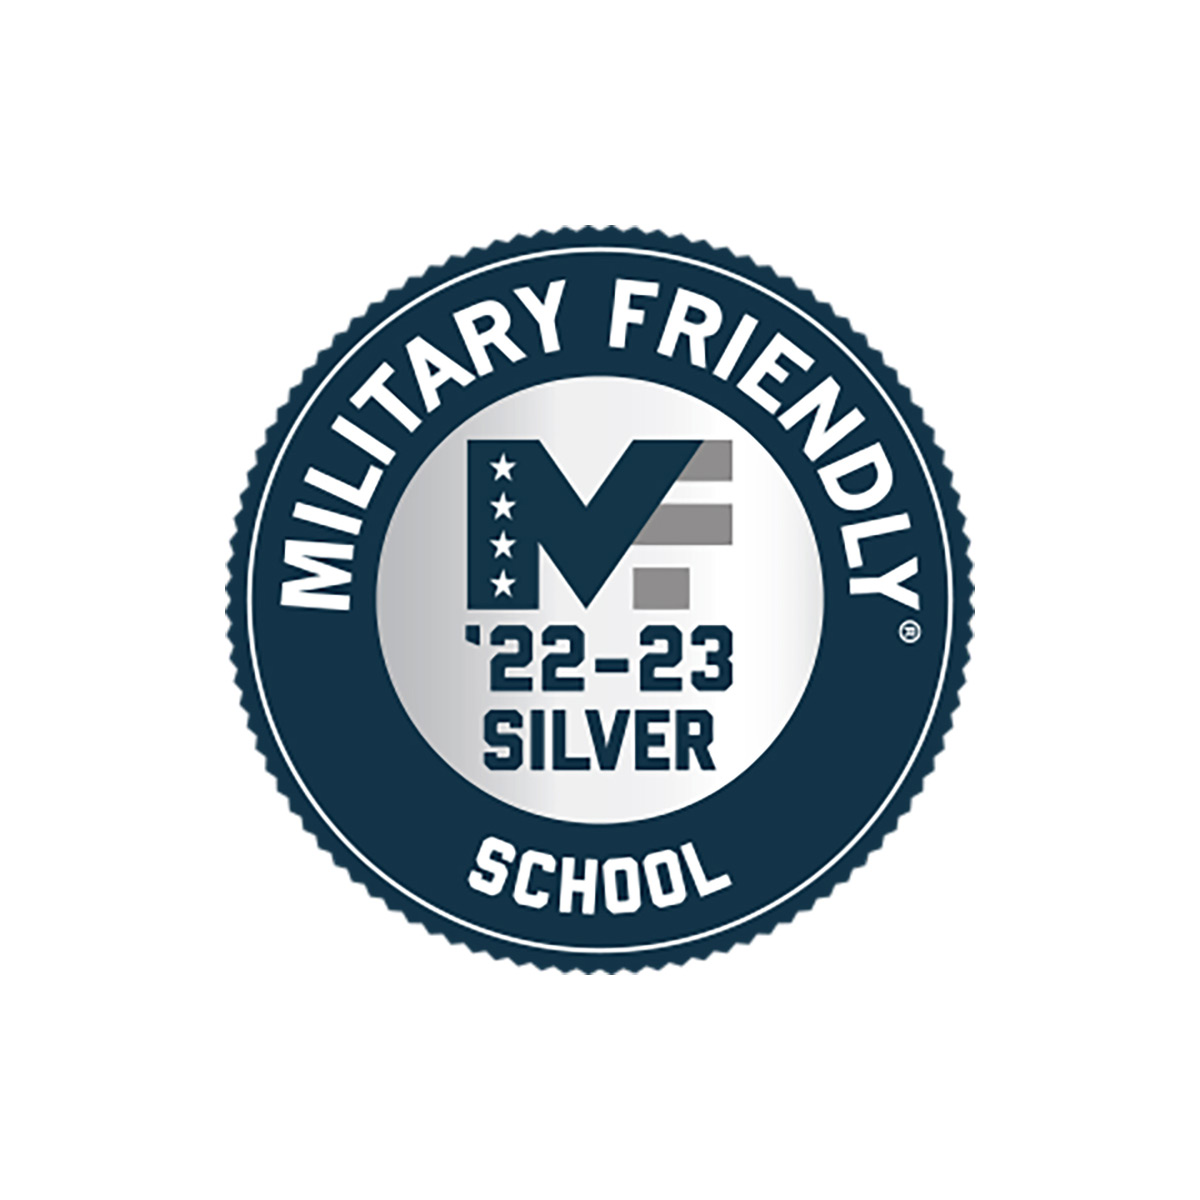 Military Friendly School 22-23